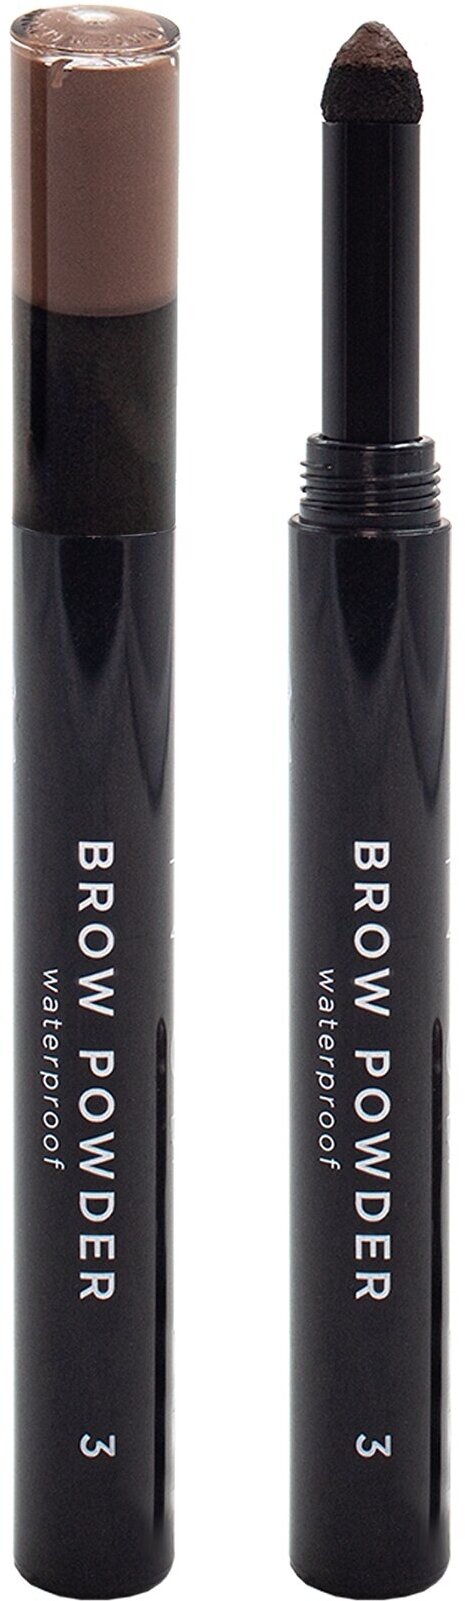 Водостойкие тени-карандаш для бровей Nouba Brow Powder Waterproof